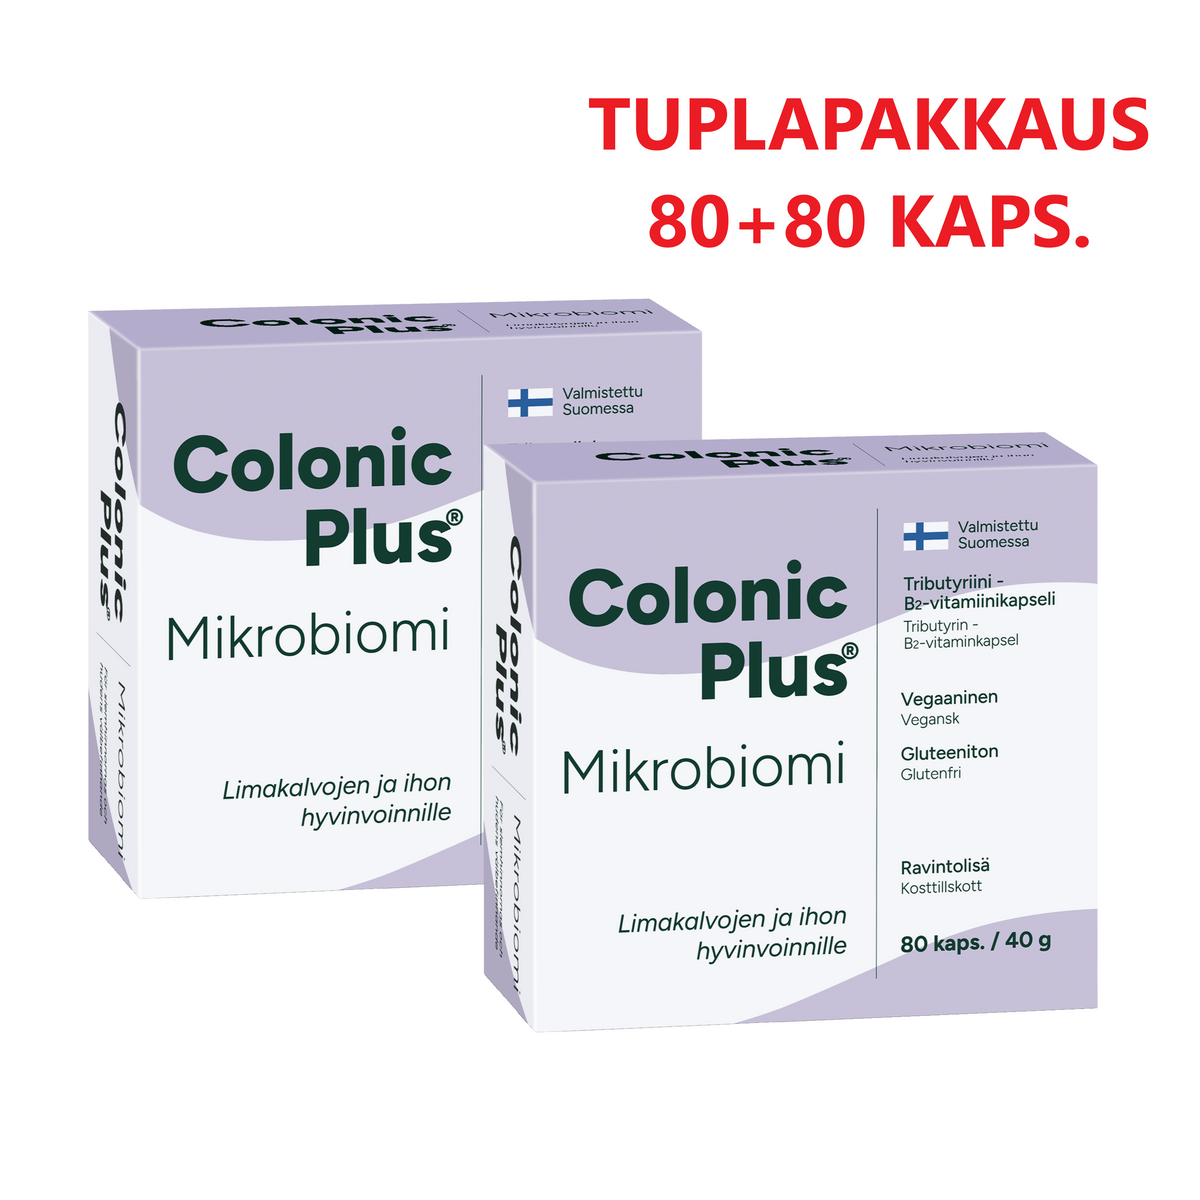 Colonic Plus Mikrobiomi TUPLAPAKKAUS 80+80 kaps.